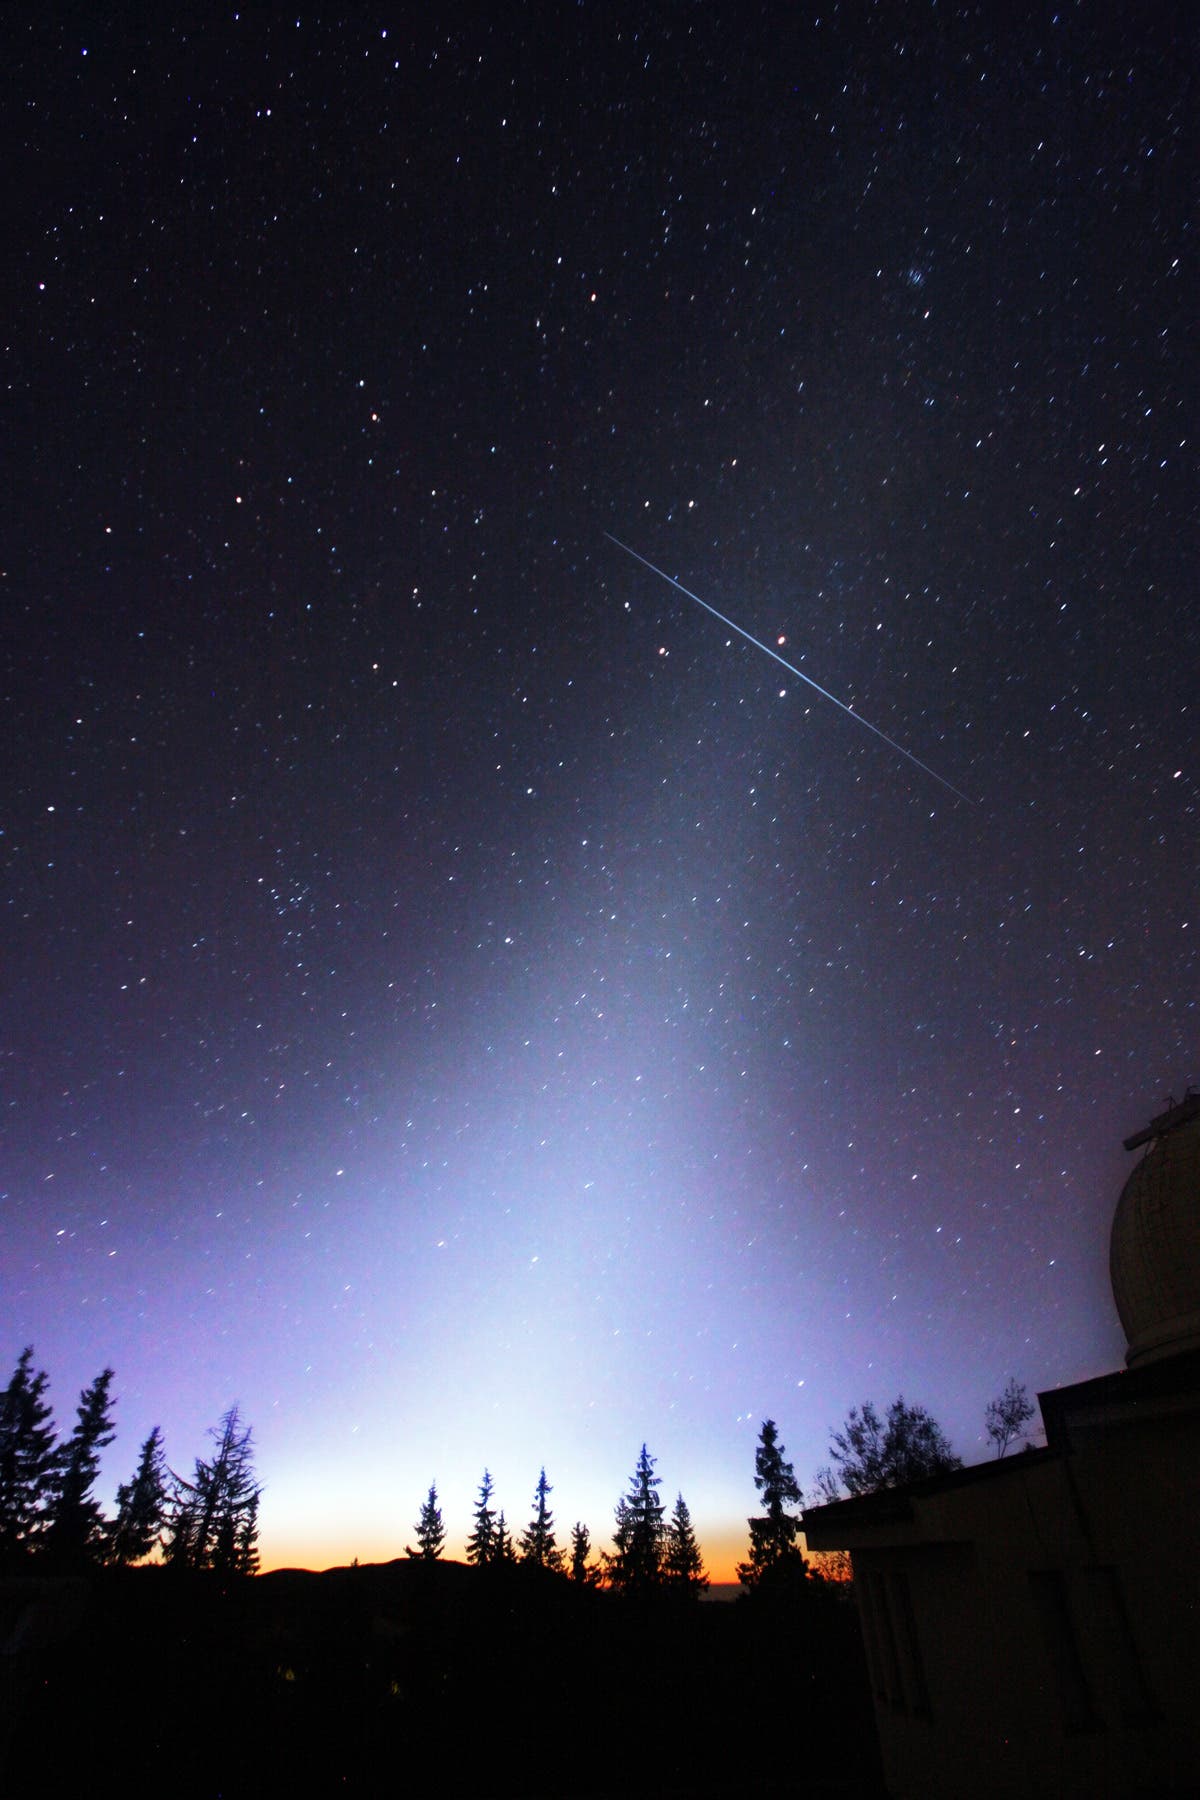 Heller Meteor im Zodiakallicht zwischen Regulus und Mars